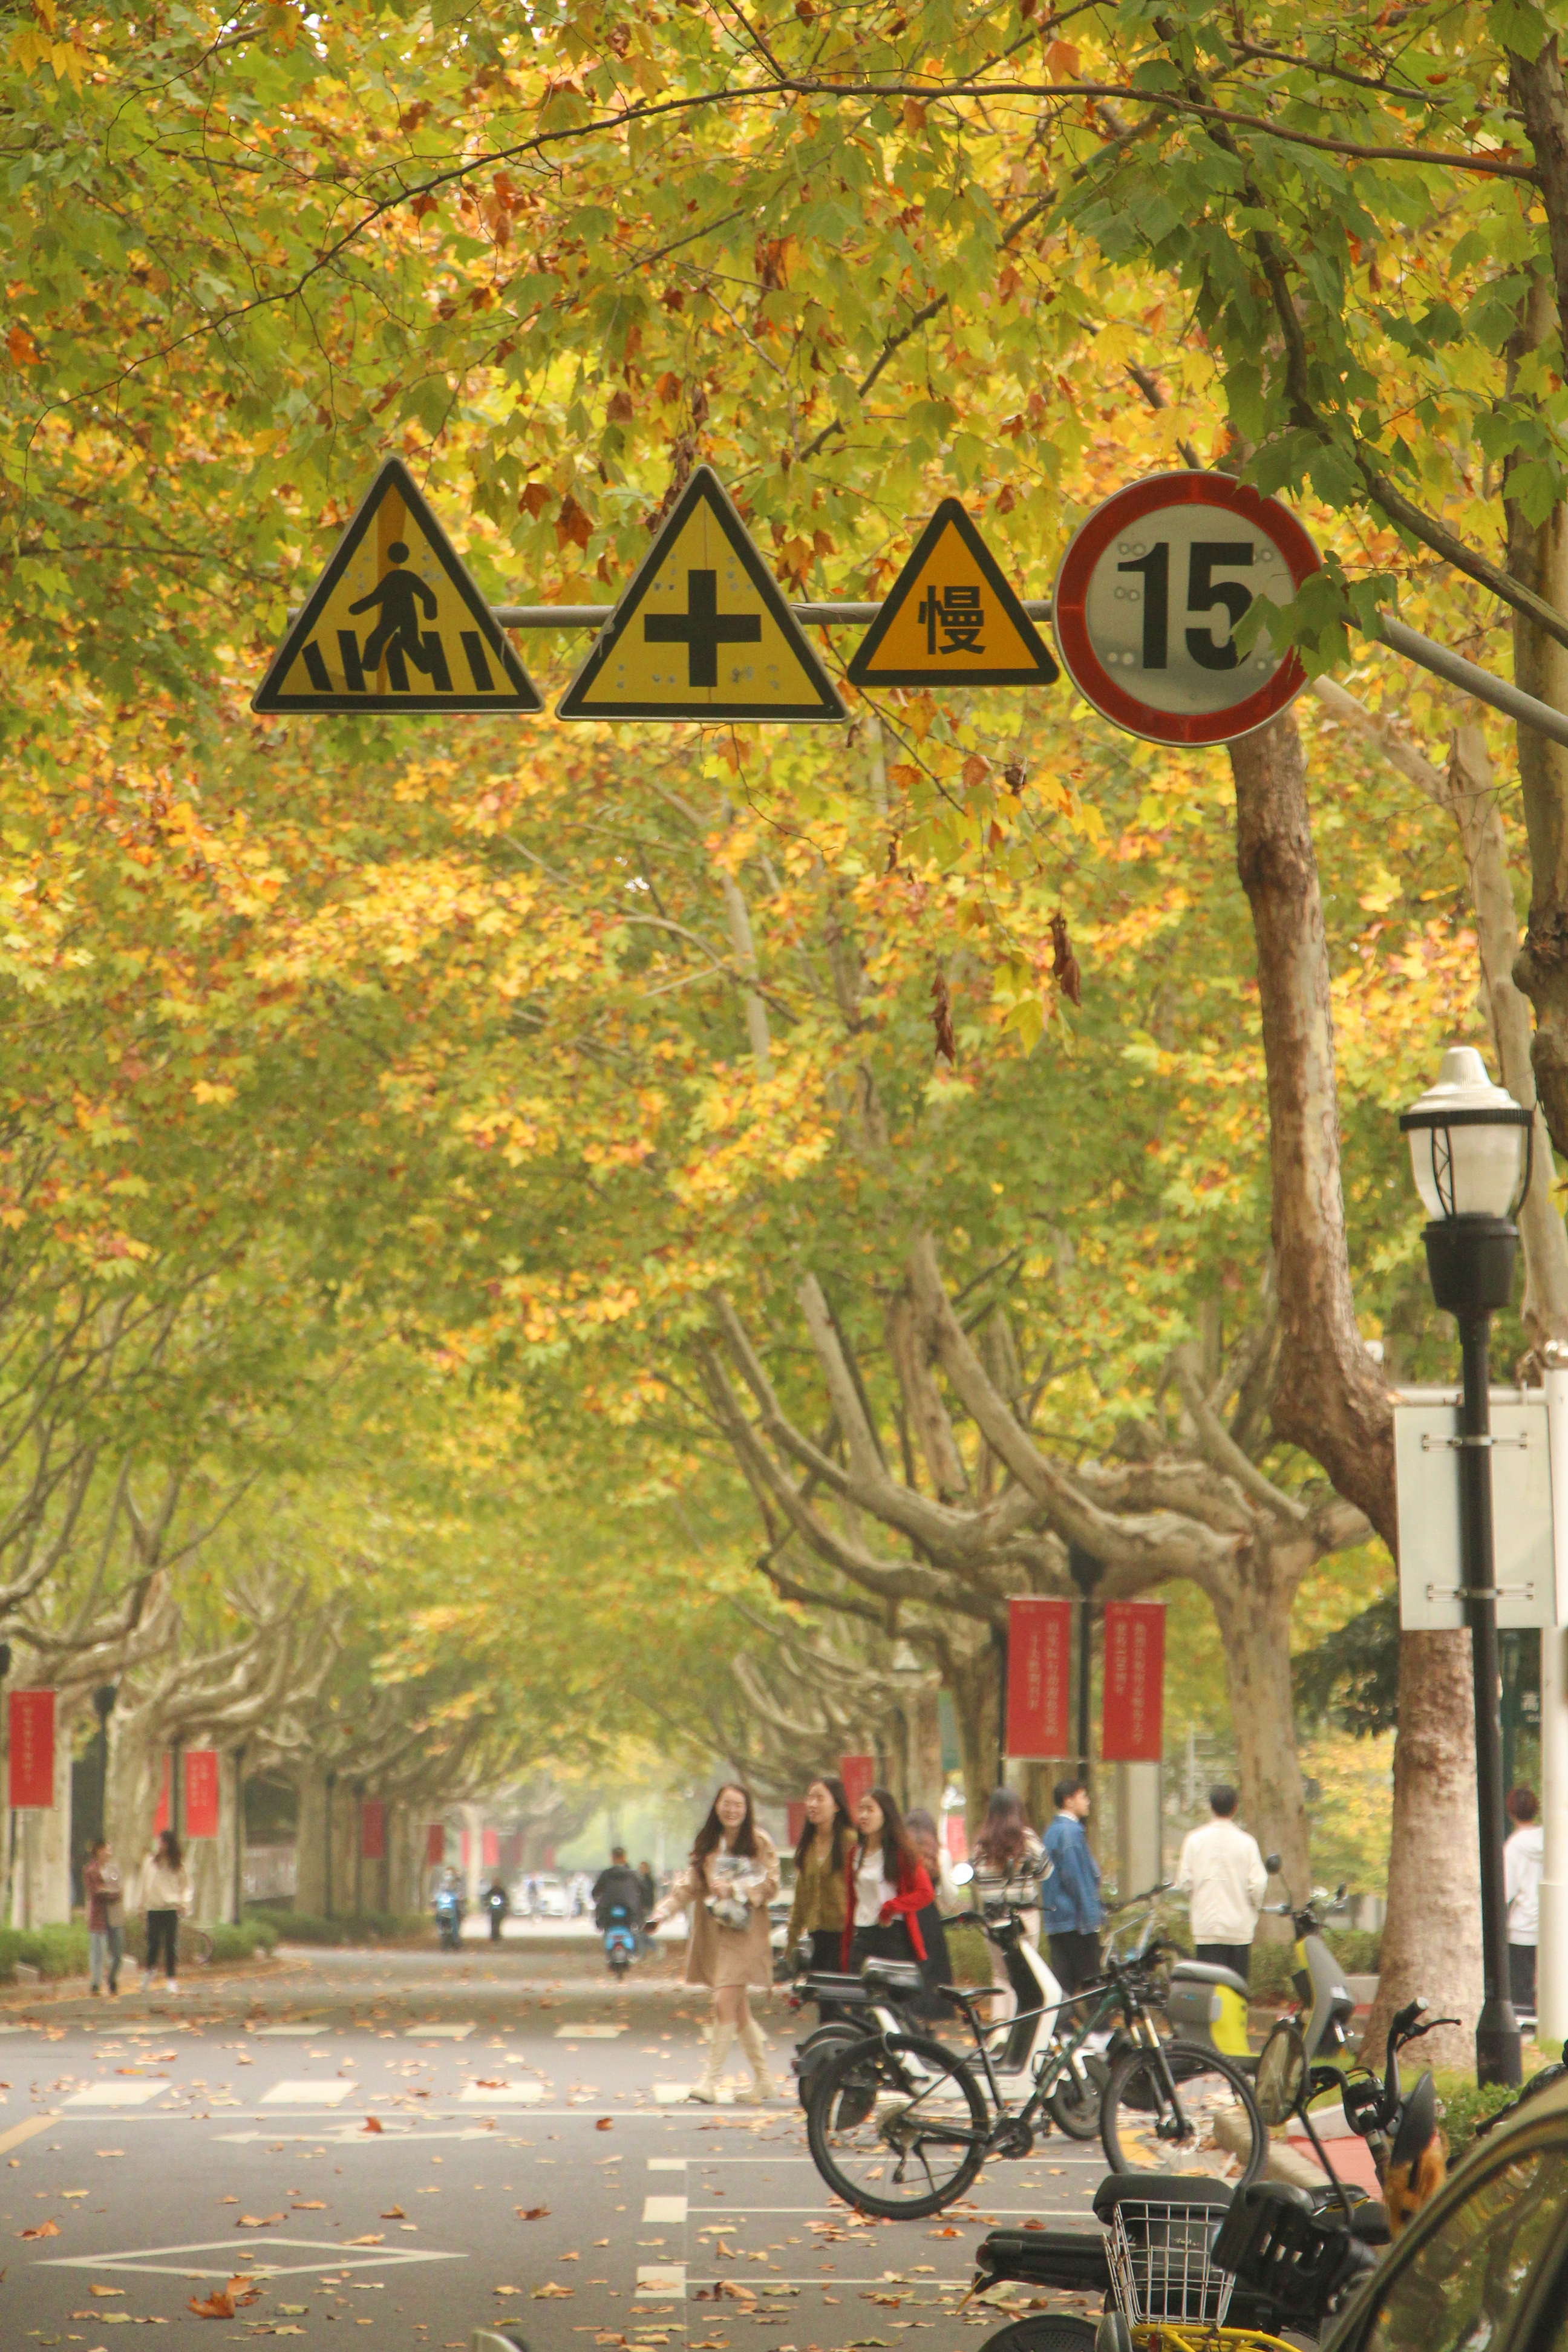 让我们一起在梧桐大道上散步、闲聊，感受秋的温暖吧！